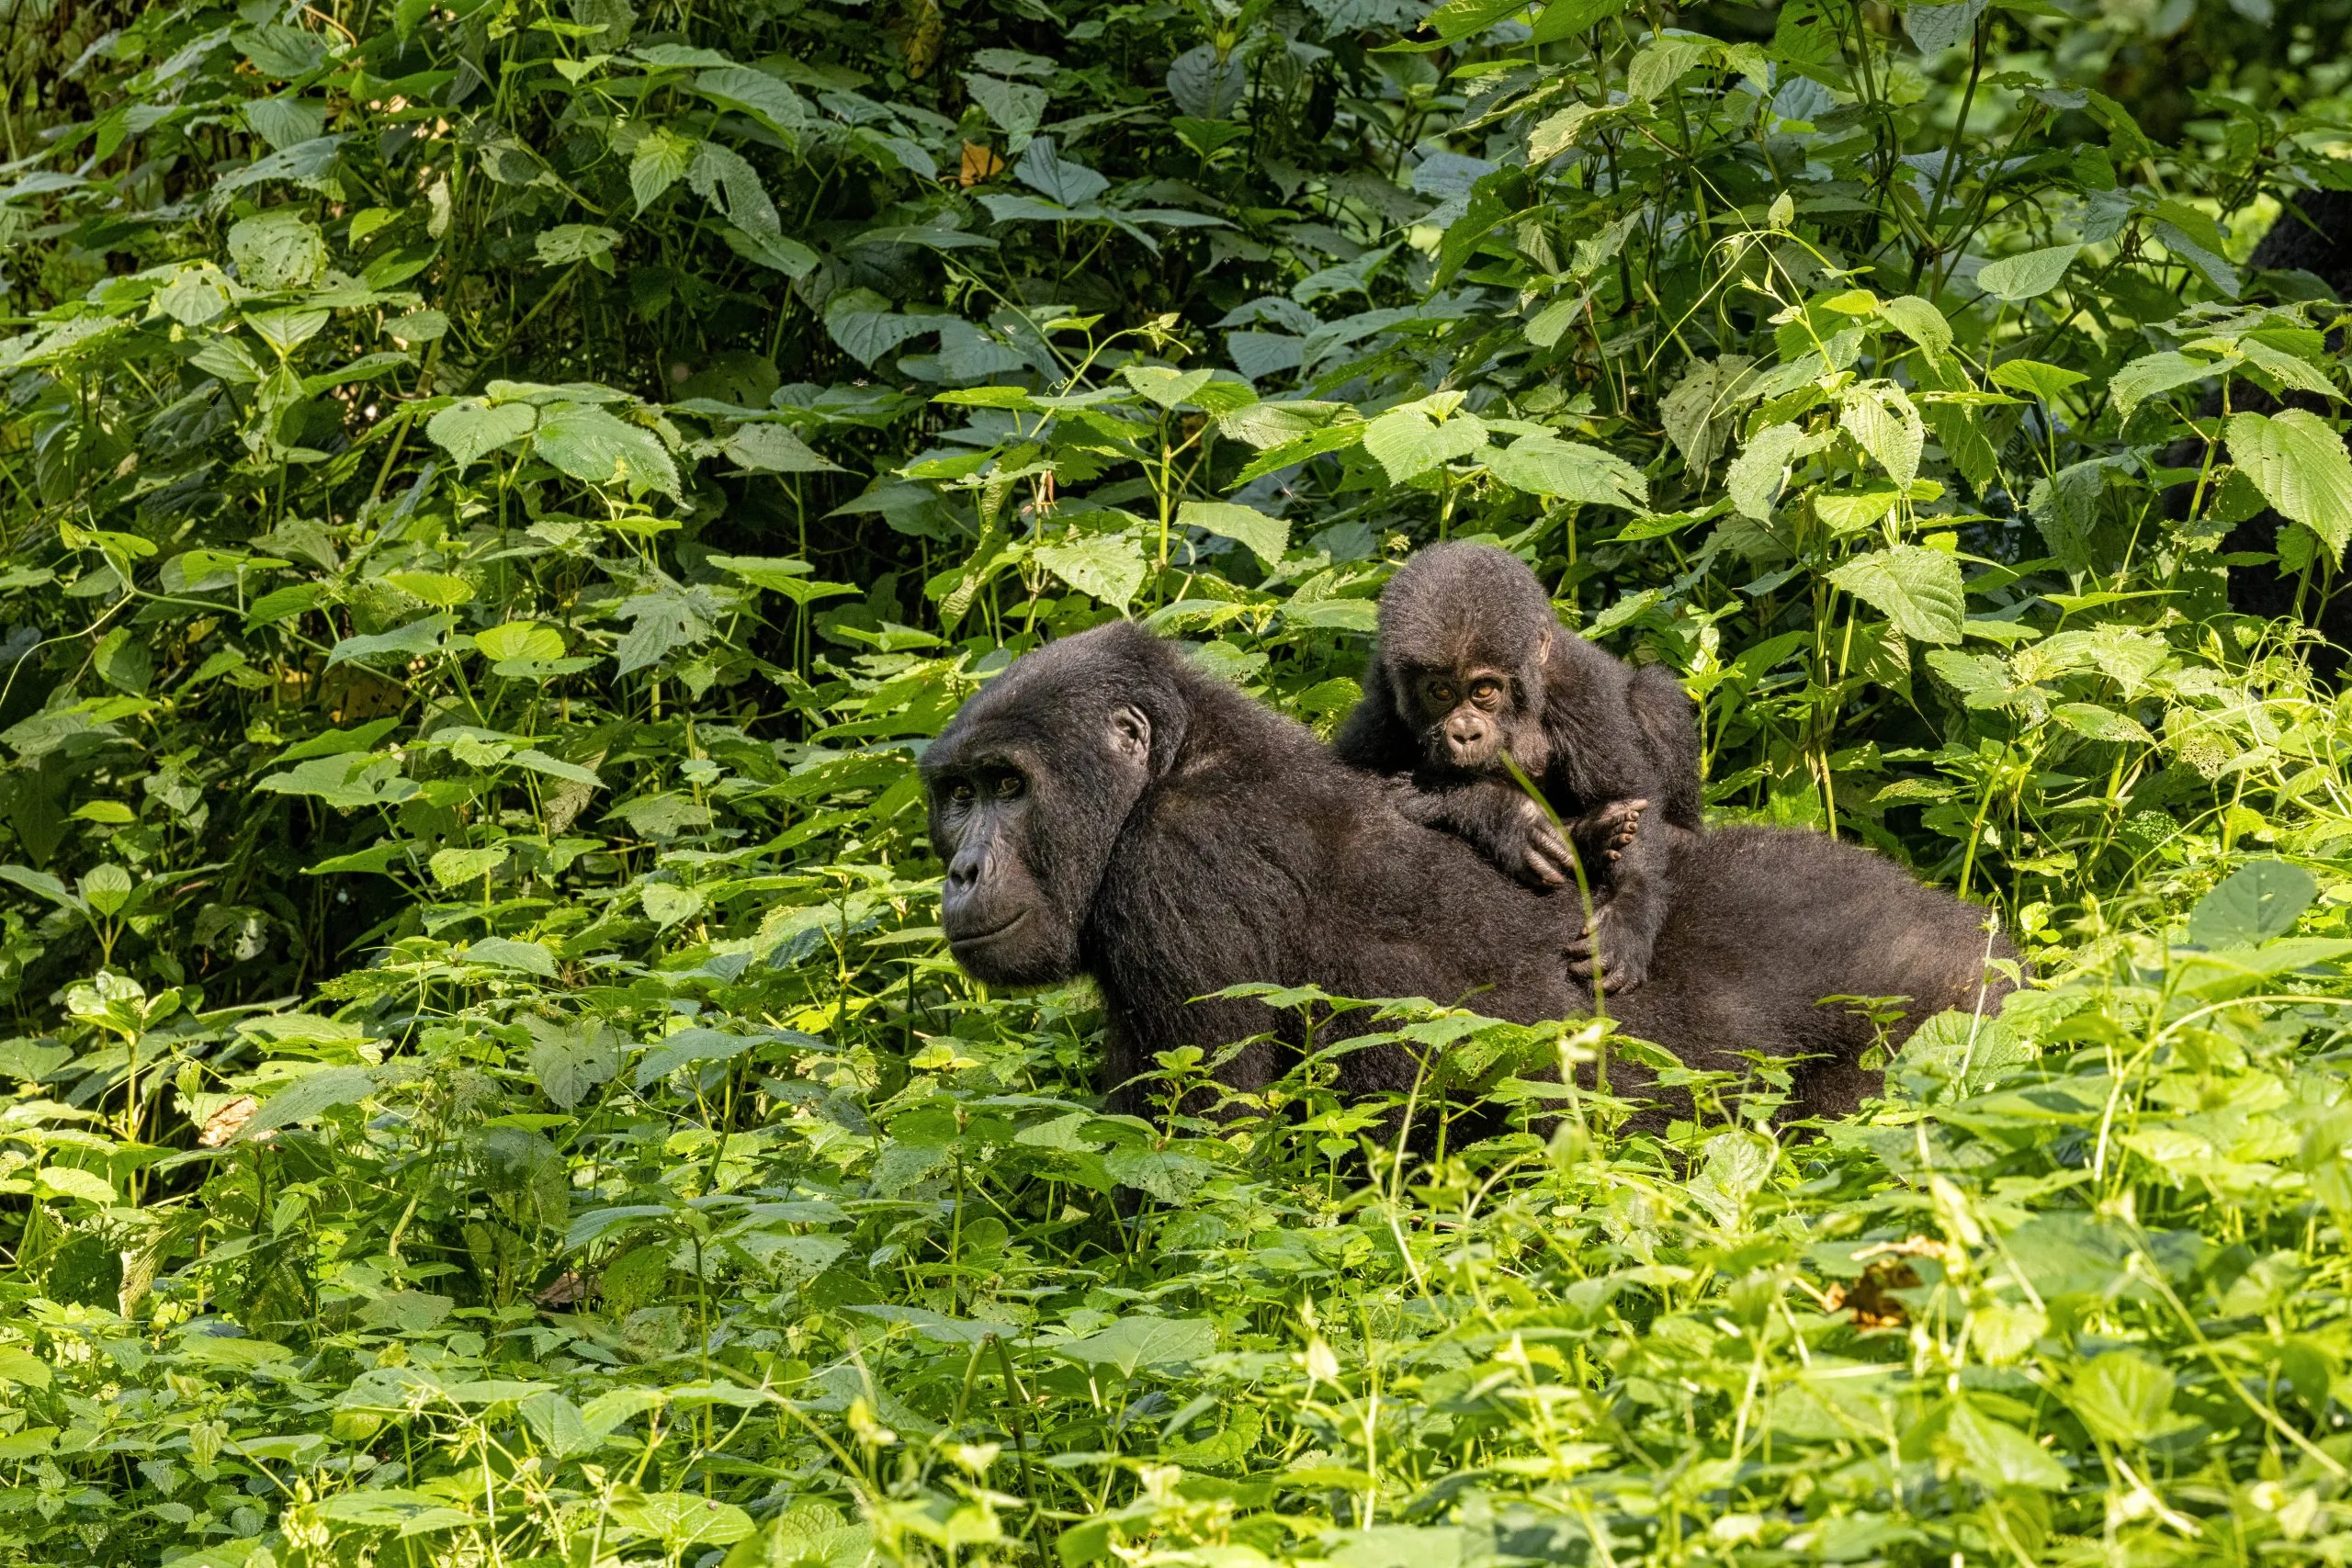 Voksen hunngorilla med baby, Gorilla beringei beringei, i det frodige løvverket i Bwindi Impenetrable Forest, Uganda. Medlemmer av Muyambi-familiens tilvenningsgruppe i bevaringsprogrammet.